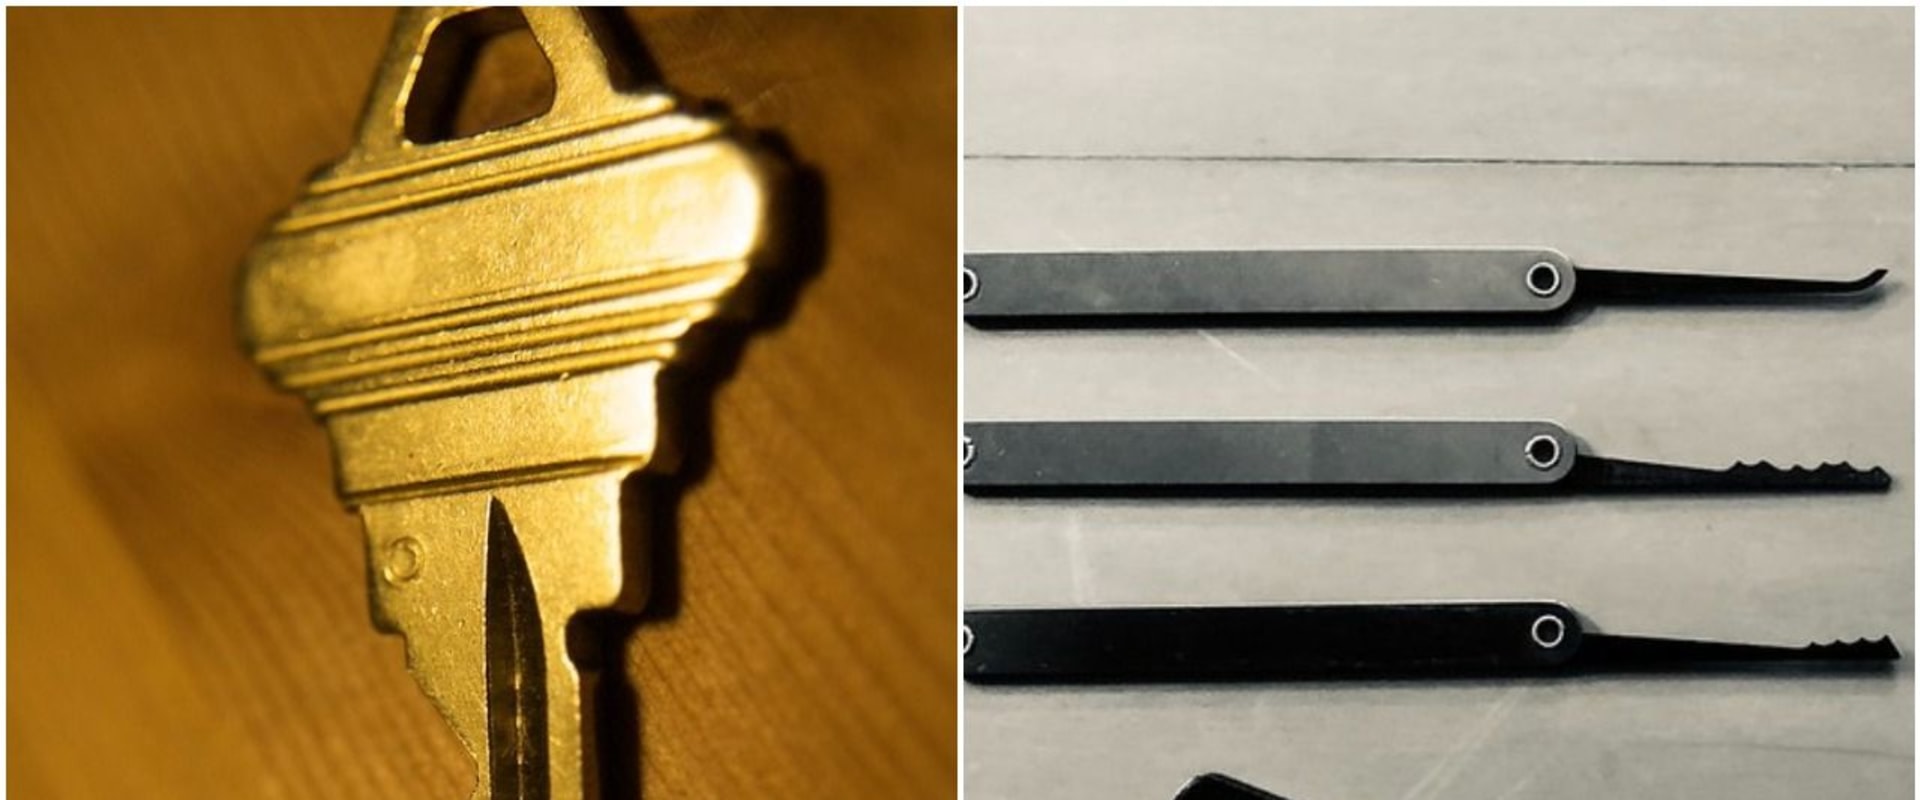 Are locksmith tools illegal?